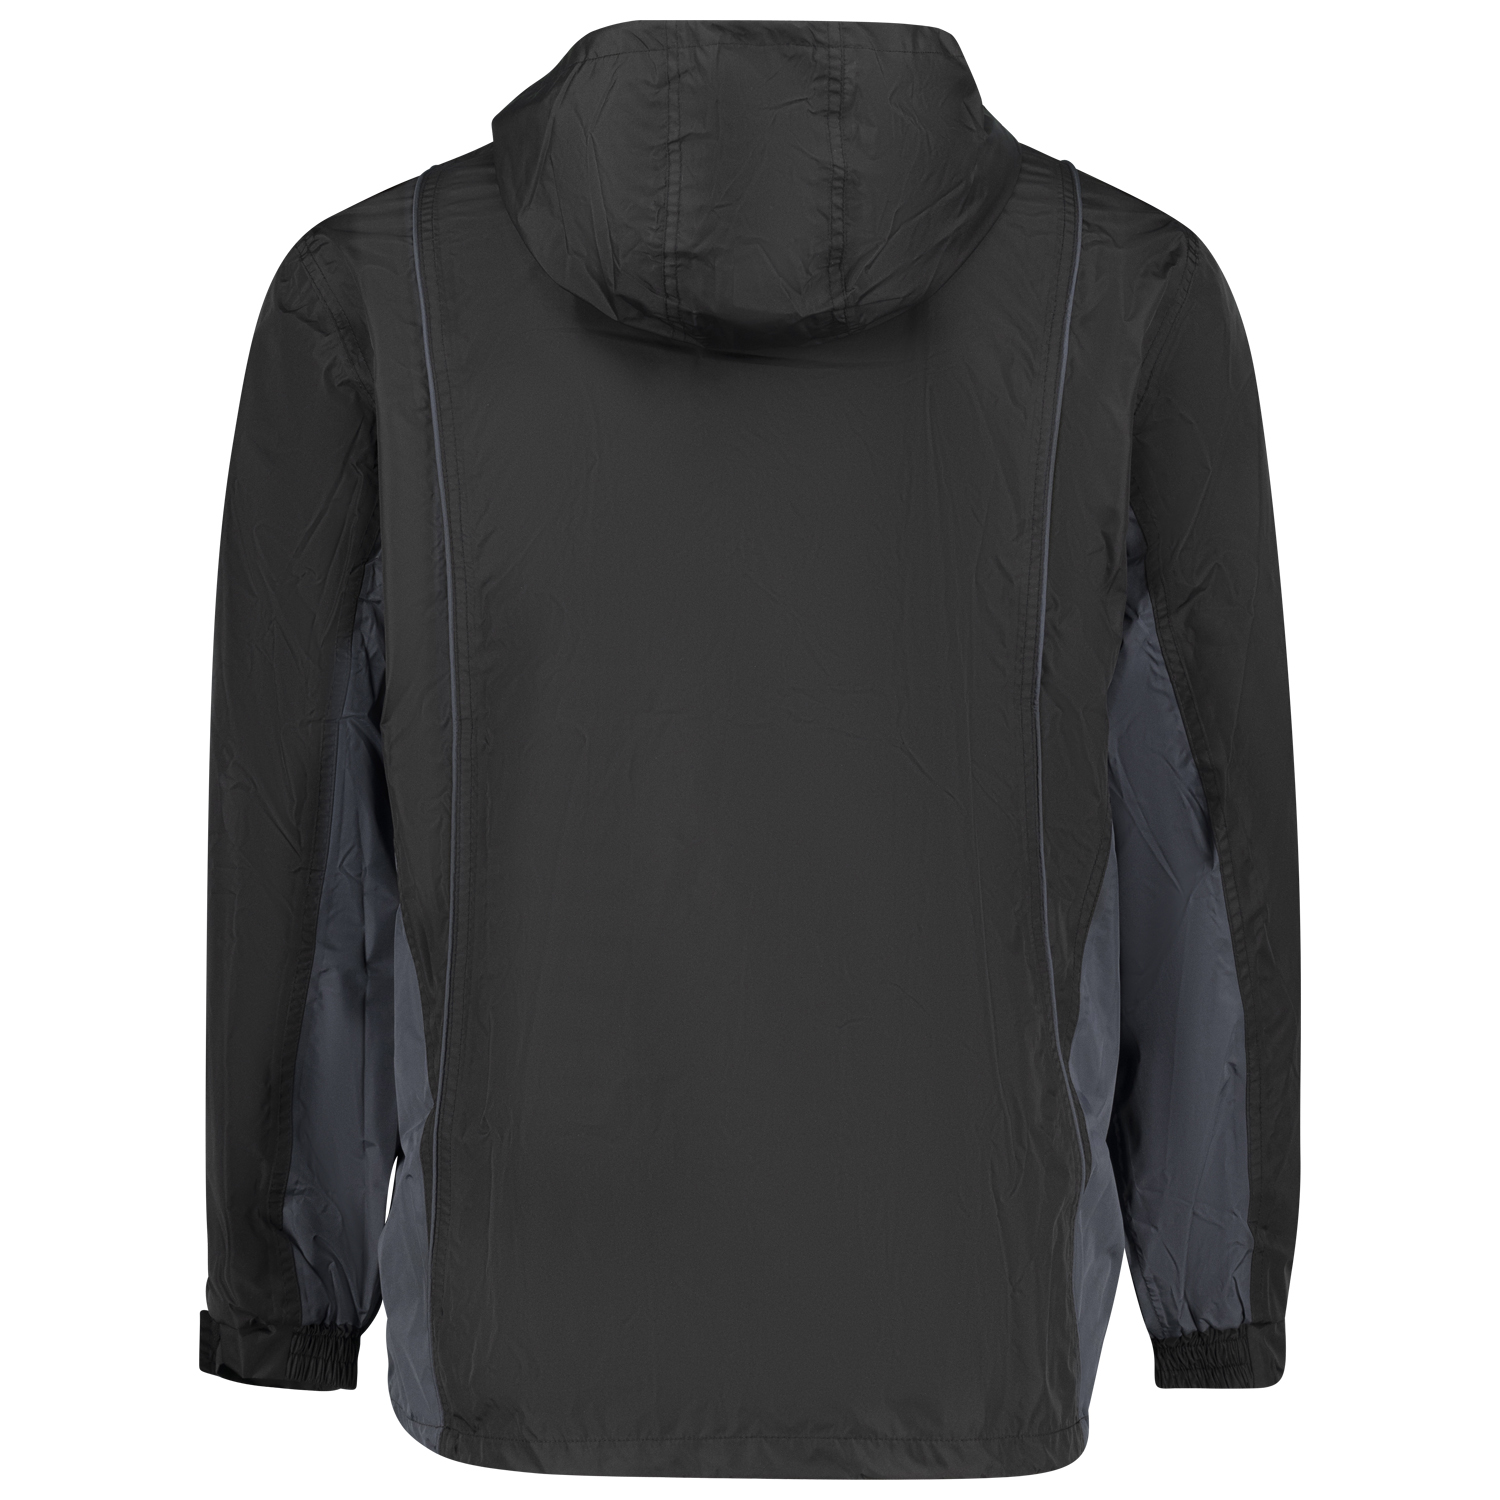 Schwarz-graue Outdoor-Jacke von Brigg für Herren in Übergrößen bis 14XL